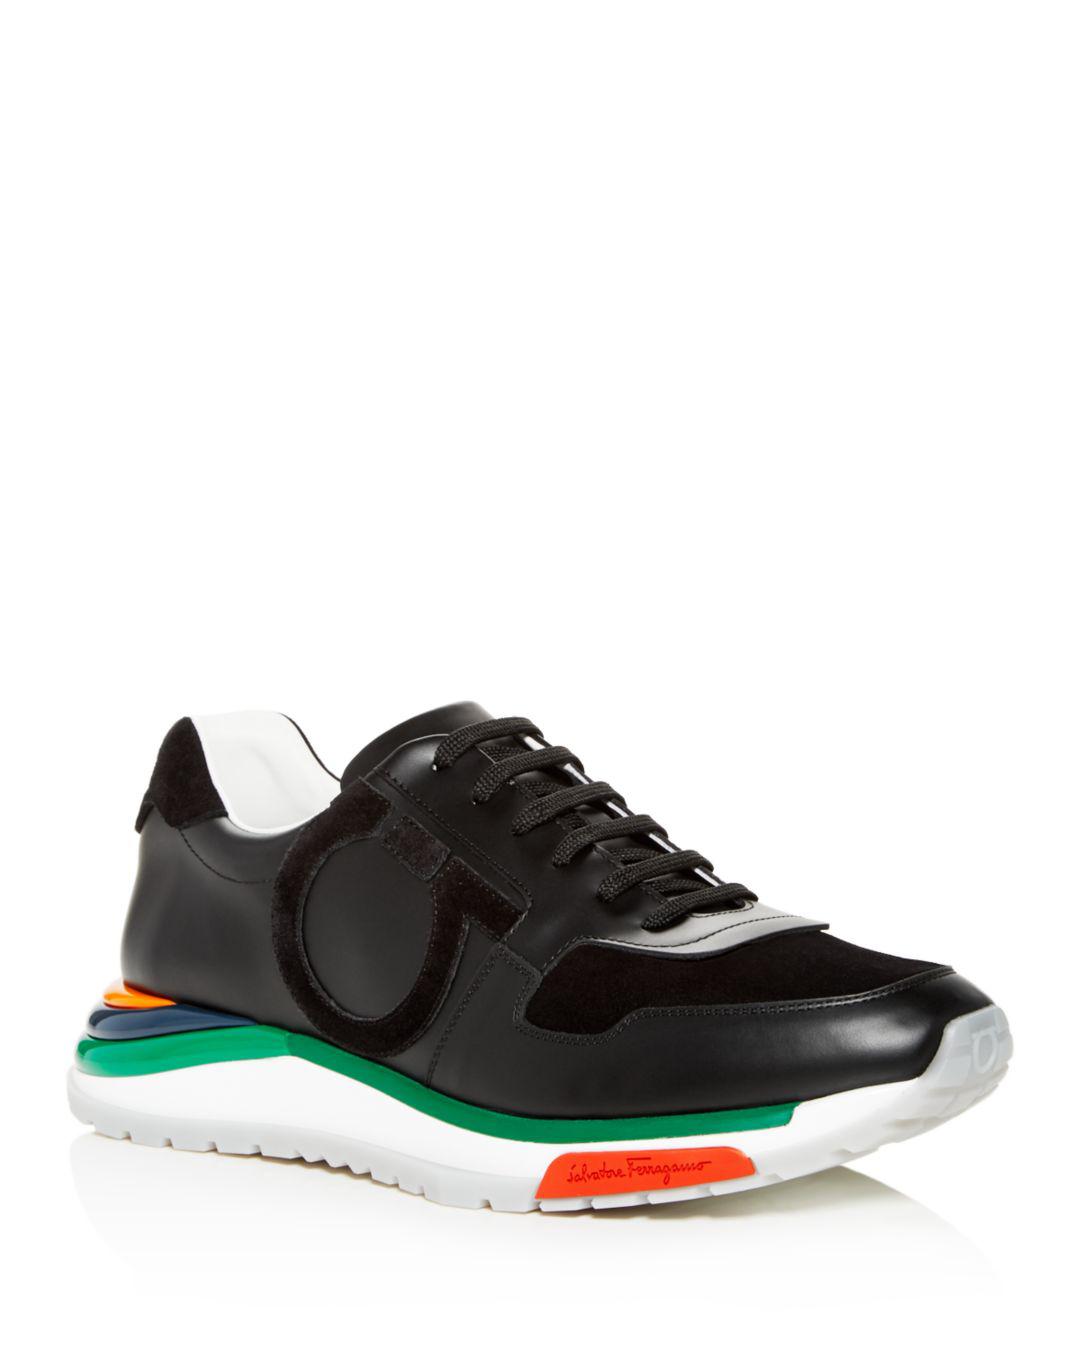 Ferragamo Men's Brooklyn Sneakers W/ Rainbow Sole in Black for Men - Lyst